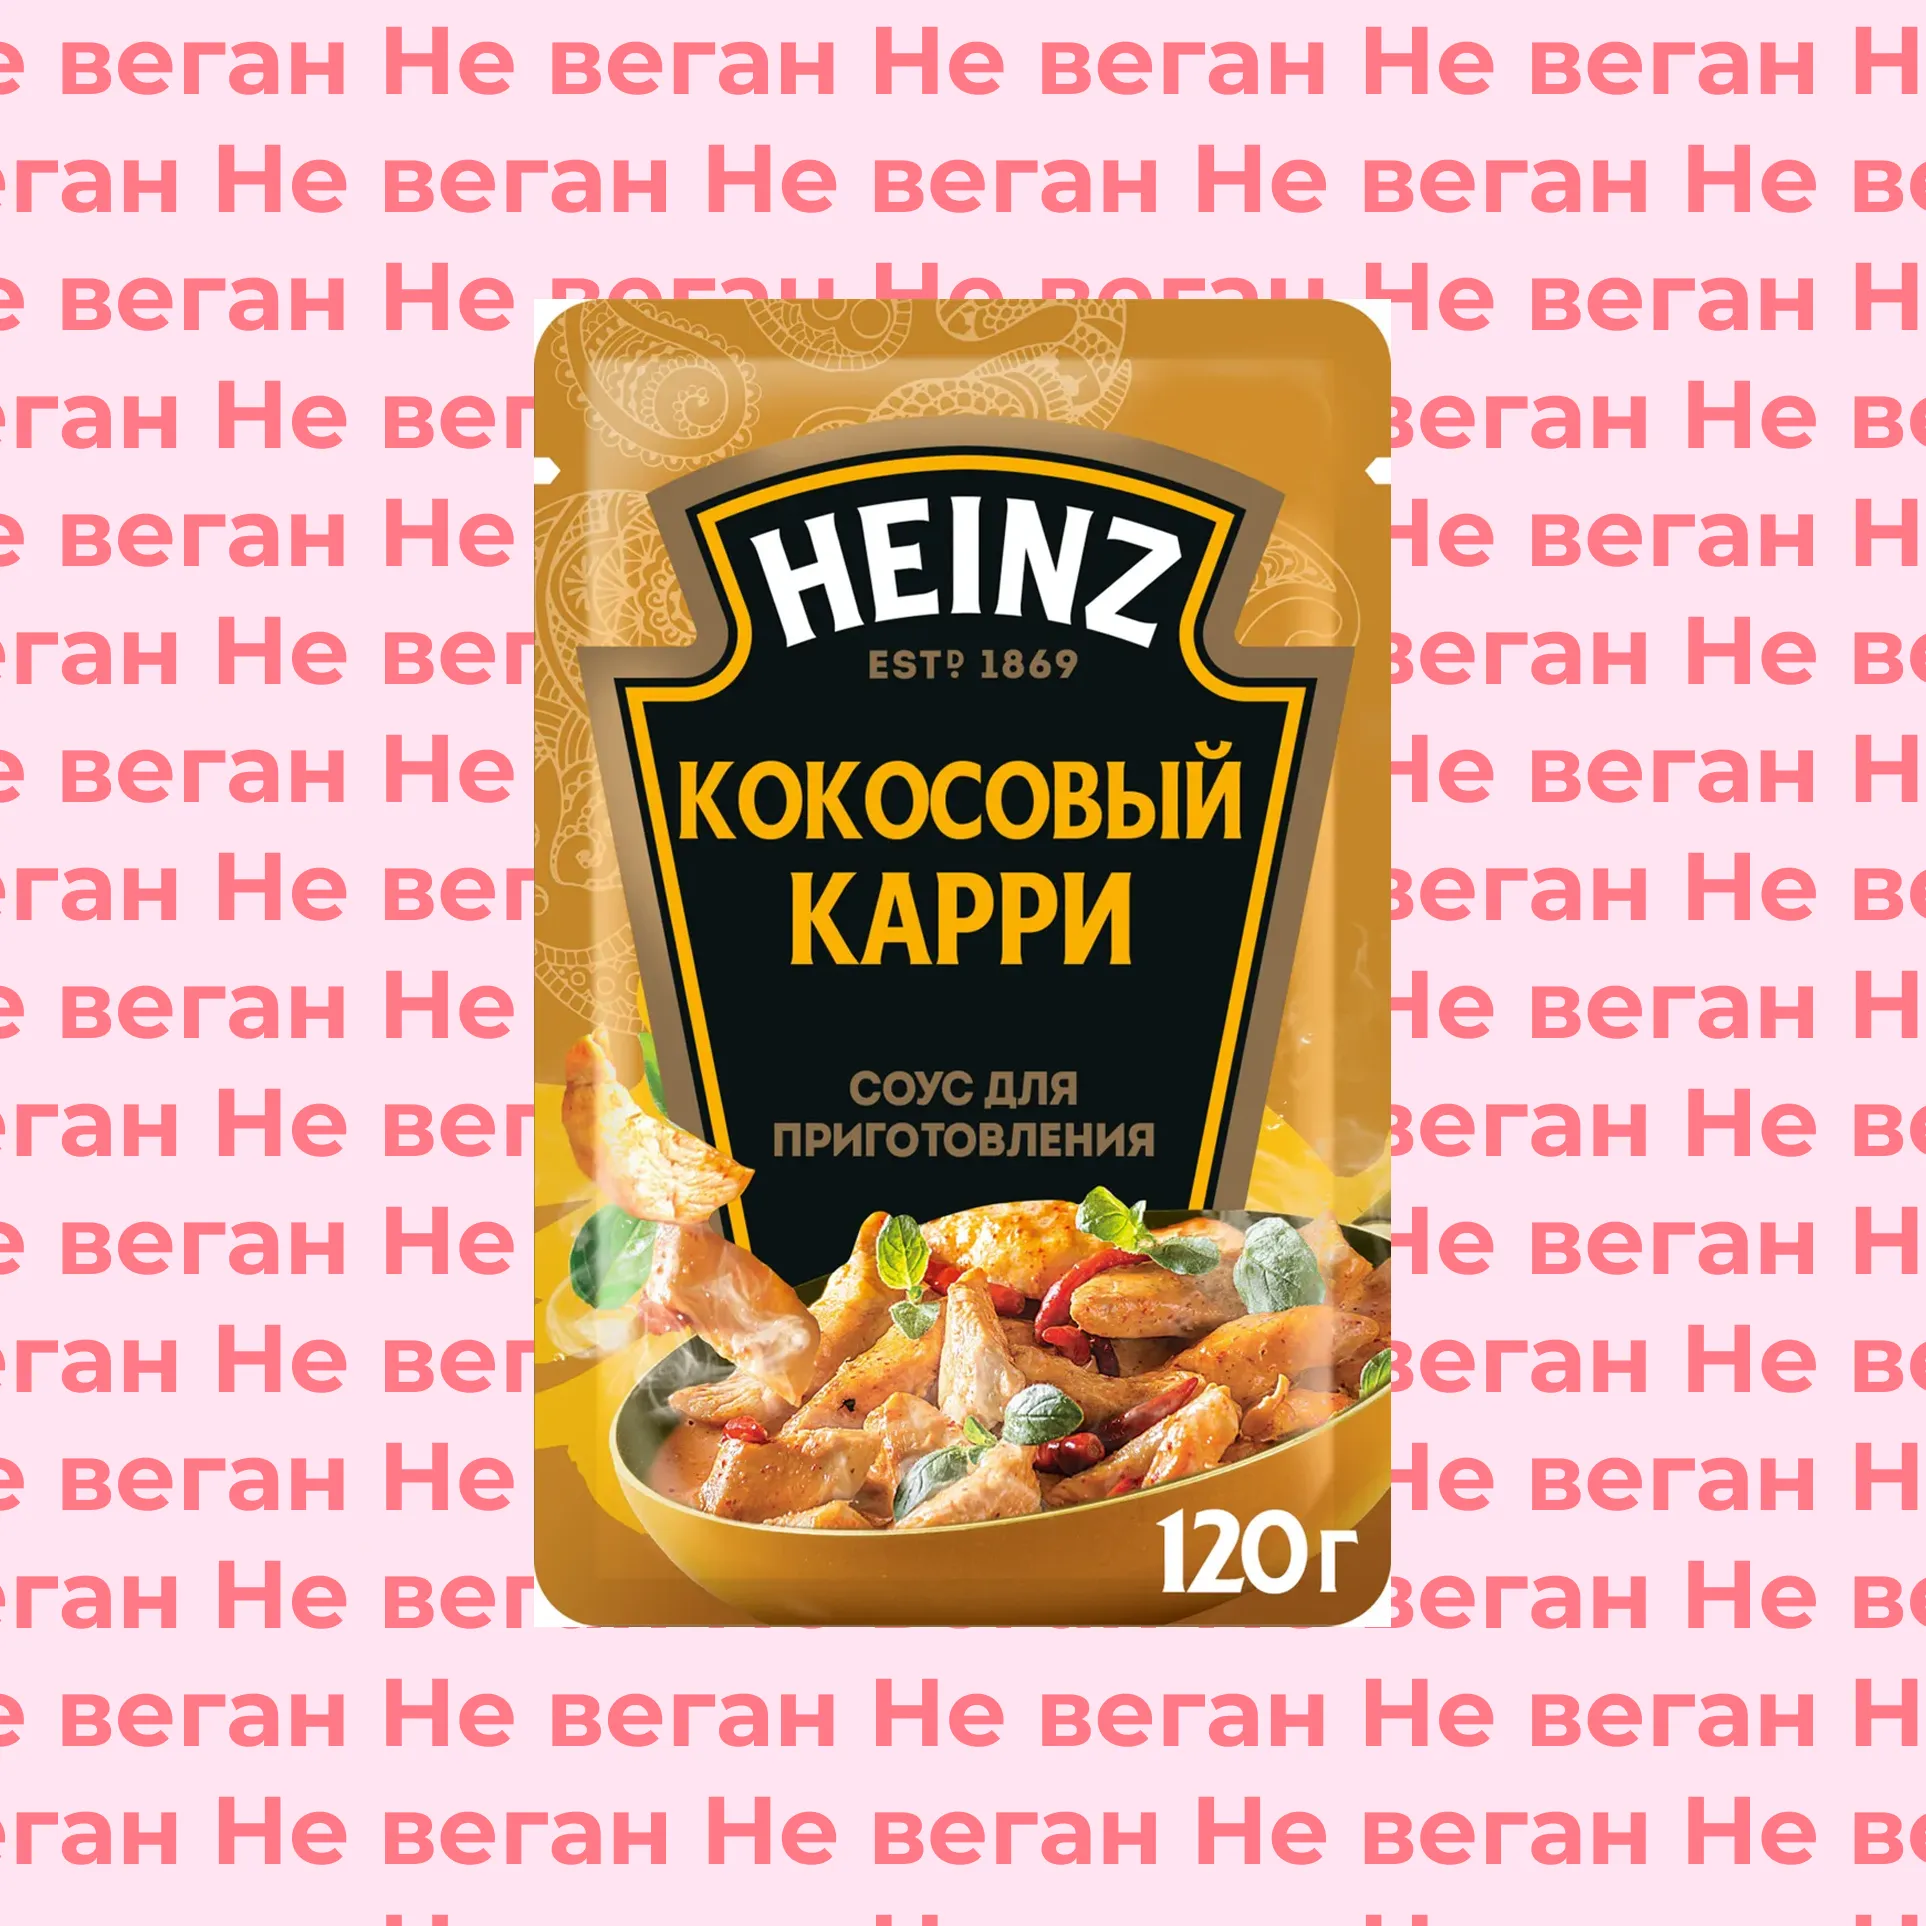 Соус для приготовления Кокосовый Карри Heinz не веган